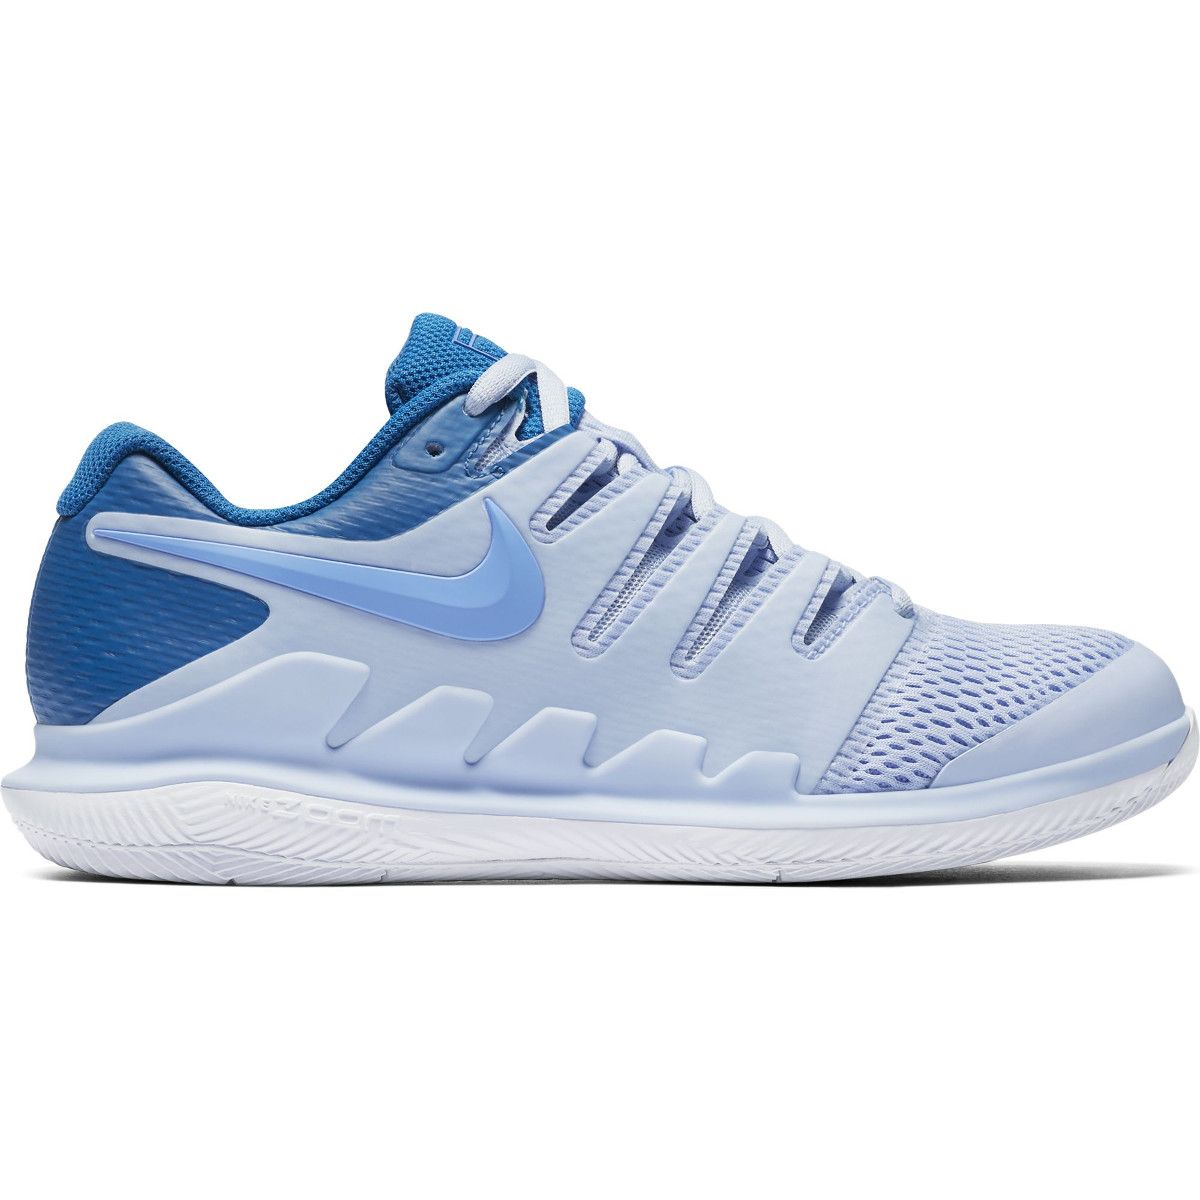 Nike Air Zoom Vapor X Women's Tennis Shoes AA8027-401